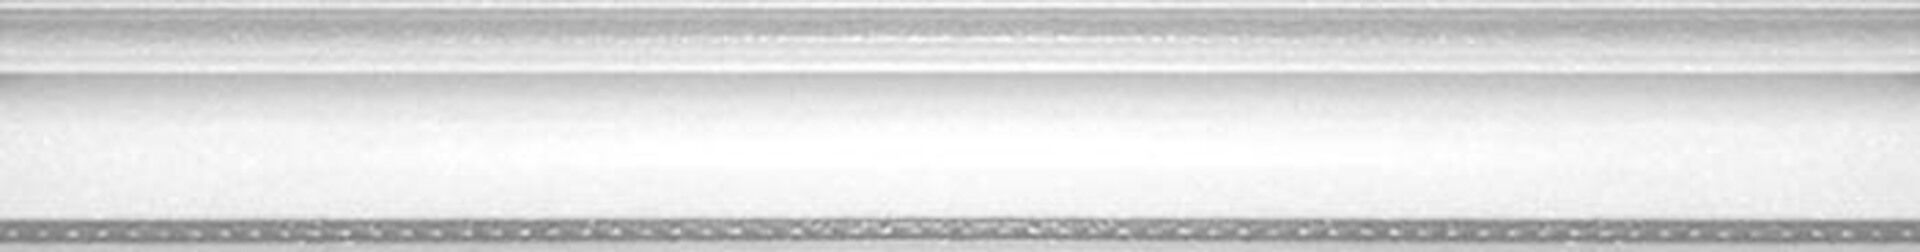 Керамическая плитка MOLD. LONDON R 4*30 / коллекция BUXY-MODUS-LONDON / производитель DUAL GRES / страна Испания